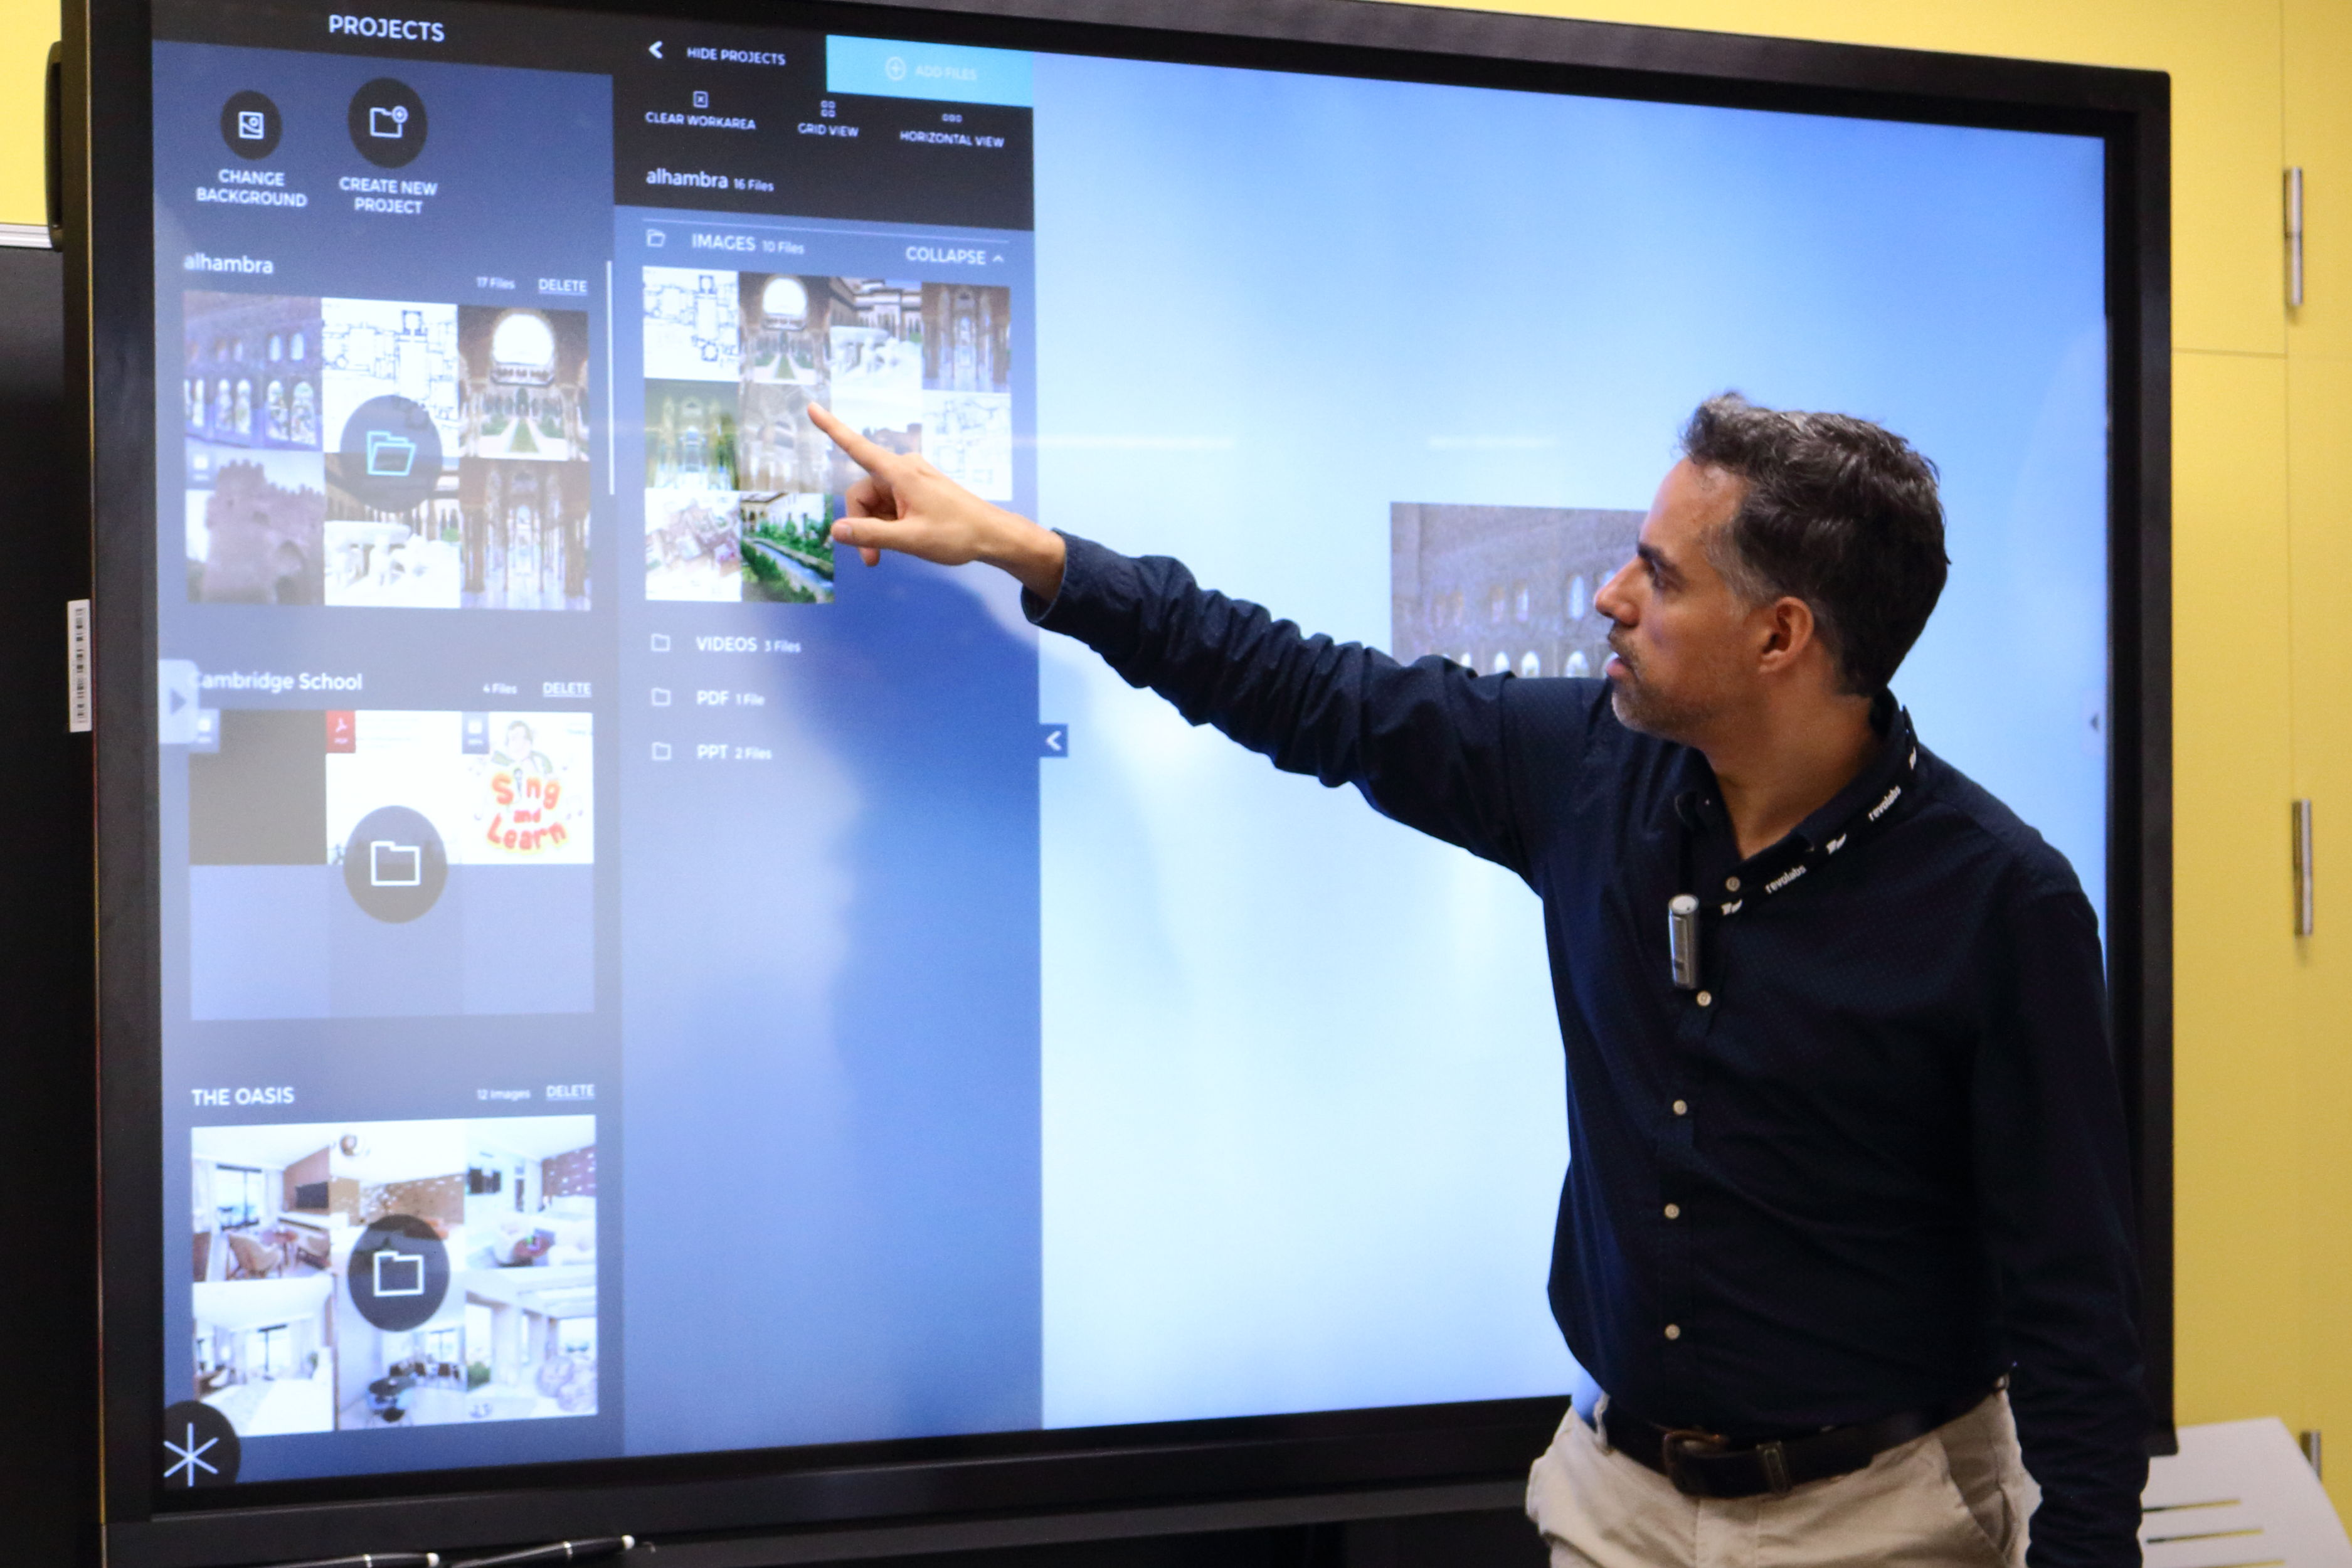 Una pizarra digital interactiva UltraHD de 84 pulgadas, nuevo recurso  docente en el campus - DUPO - Diario de la Universidad Pablo de Olavide